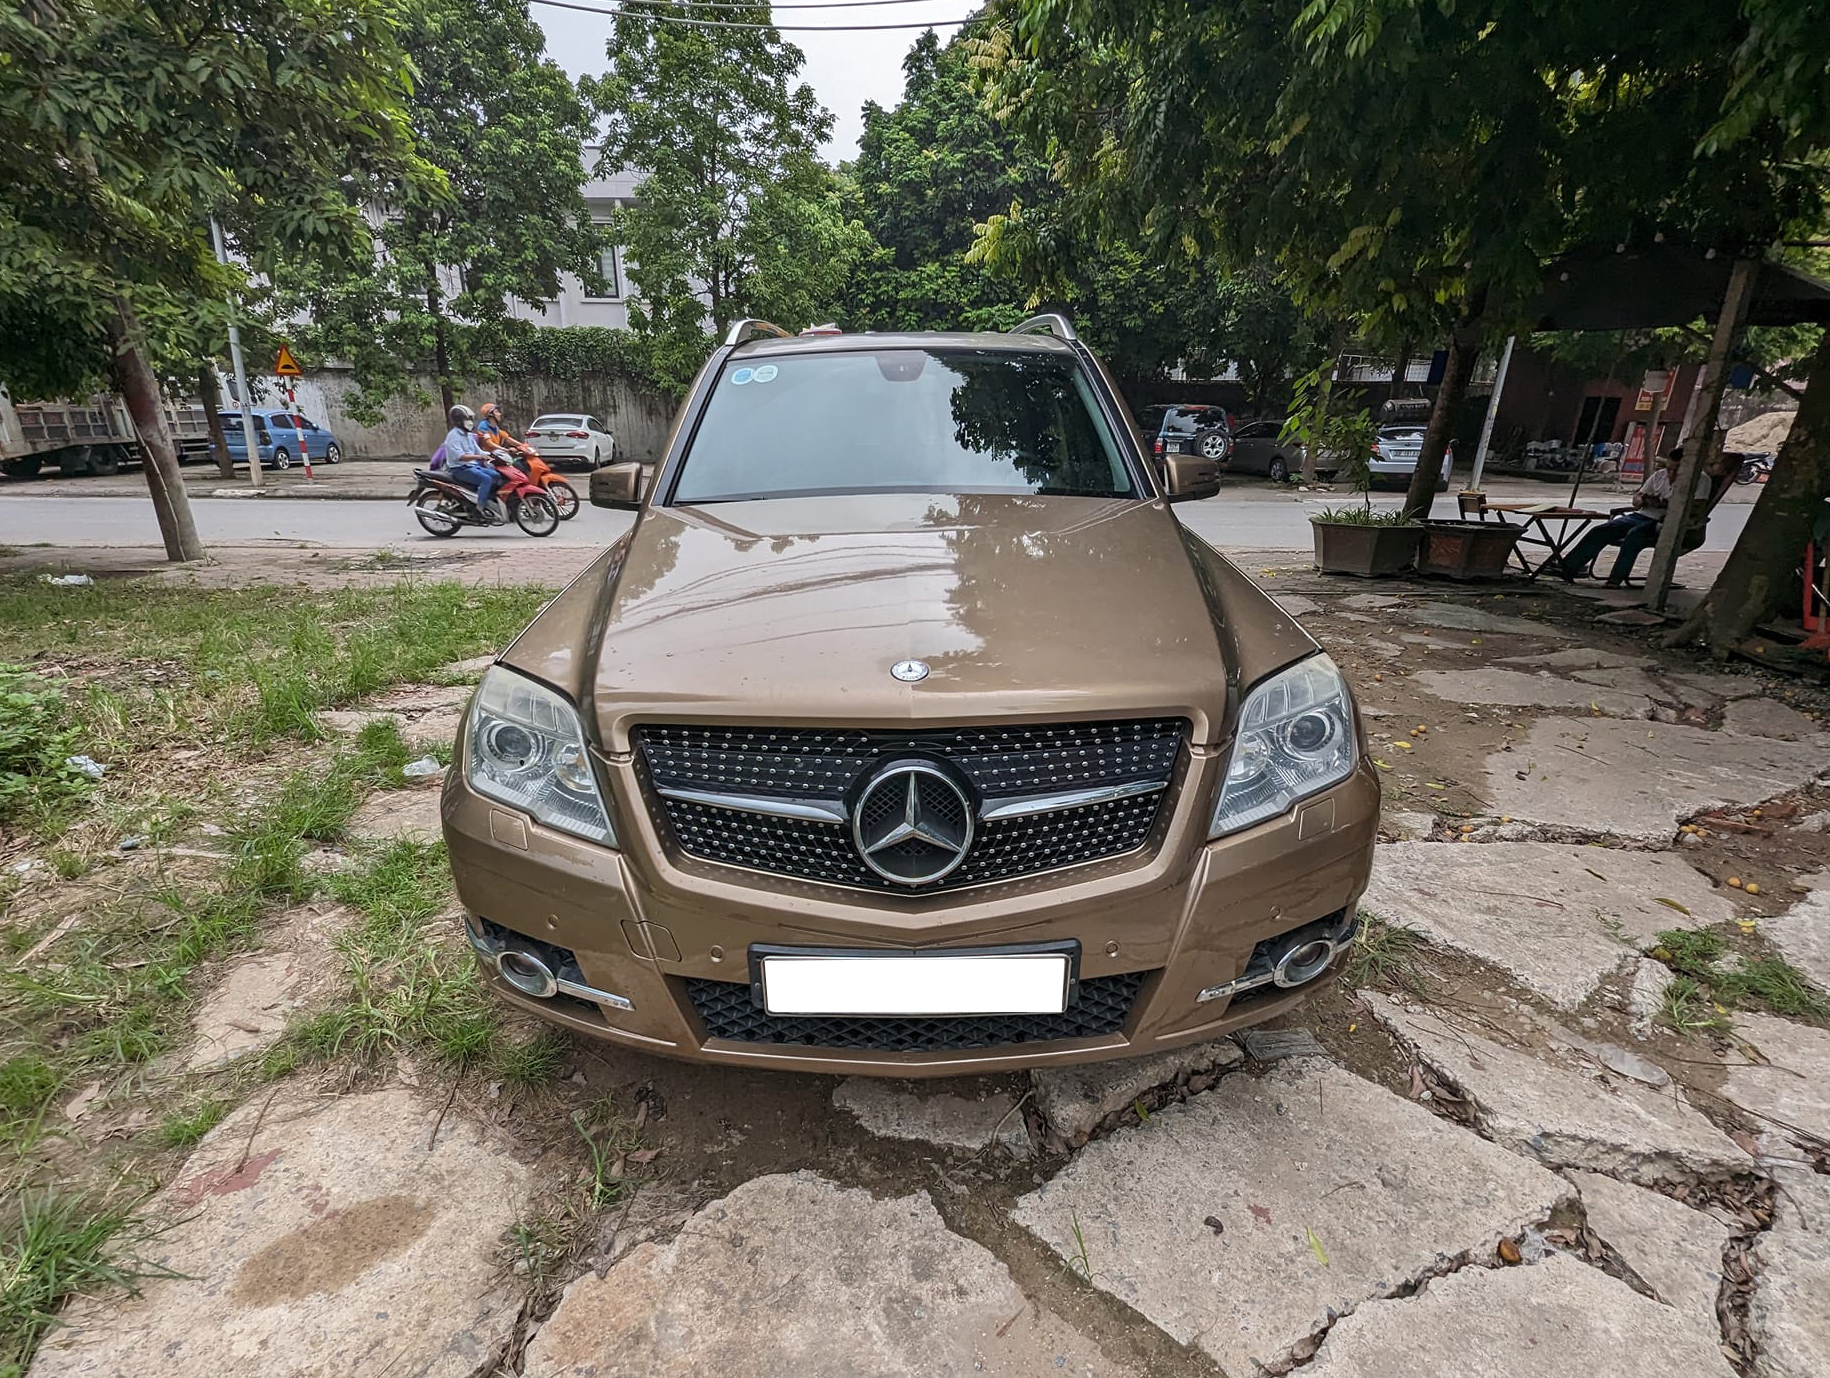 Bán Mercedes-Benz GLK odo 130.000 km giá 360 triệu đồng, chủ xe chia sẻ: ‘Phụ tùng thay thế đã tốn 250 triệu’ - Ảnh 1.